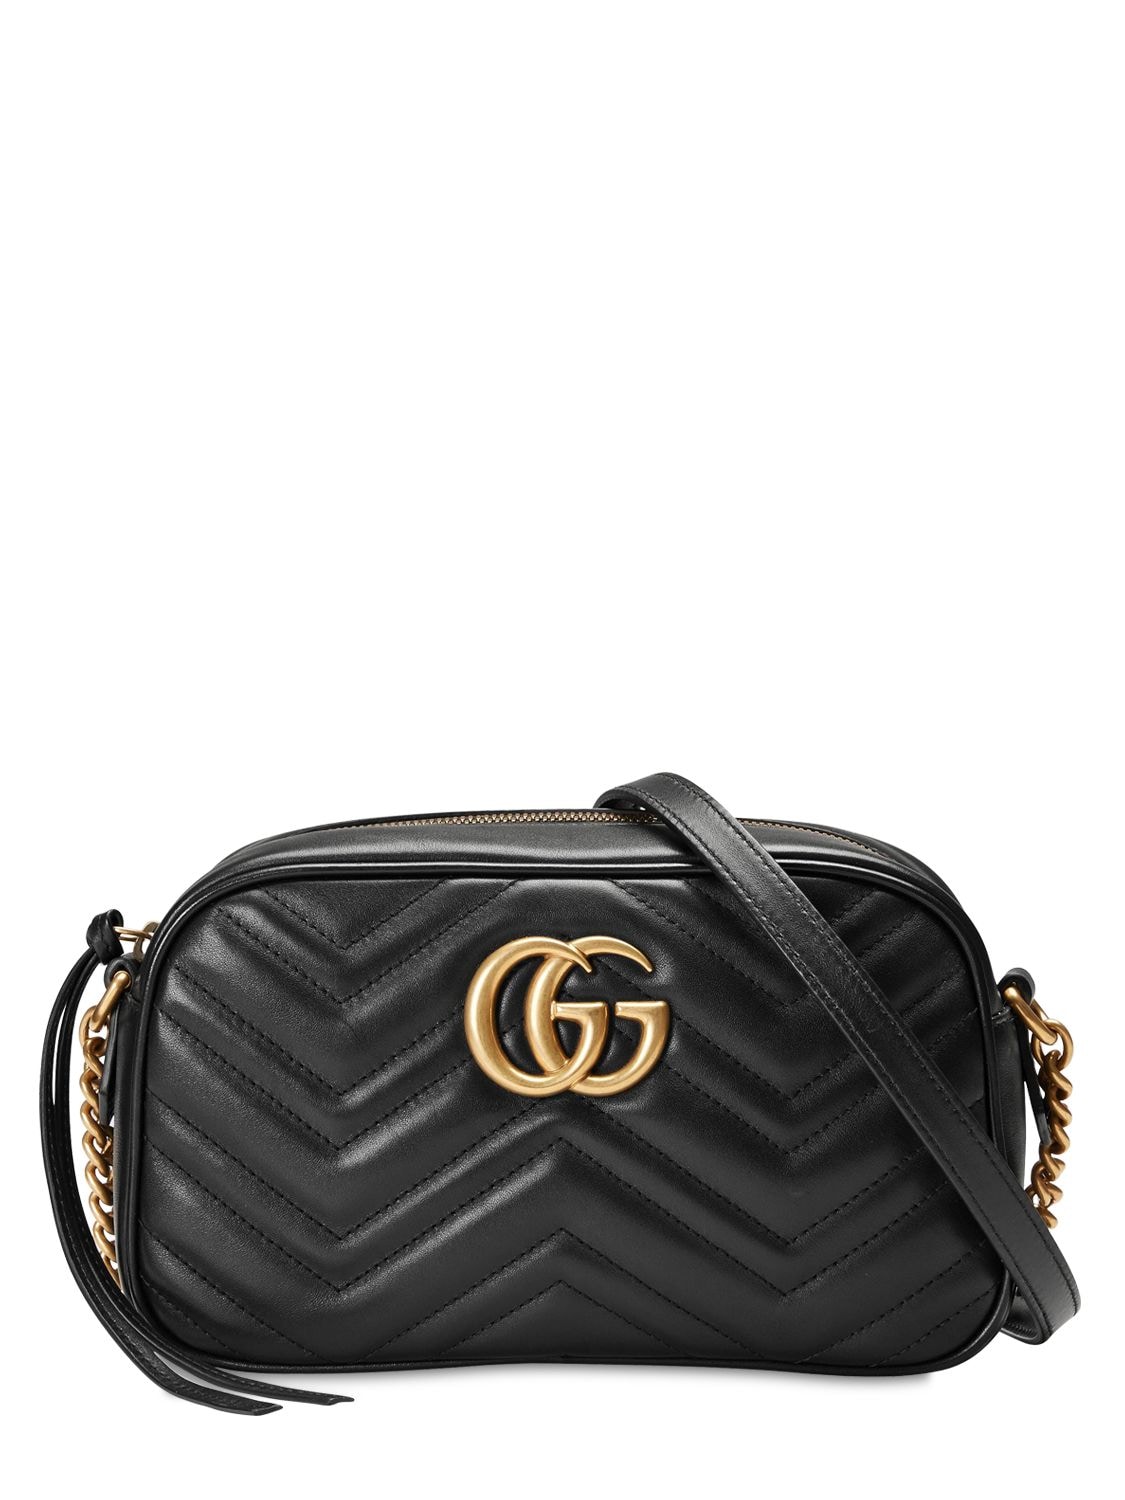 Gucci Camera Bag 